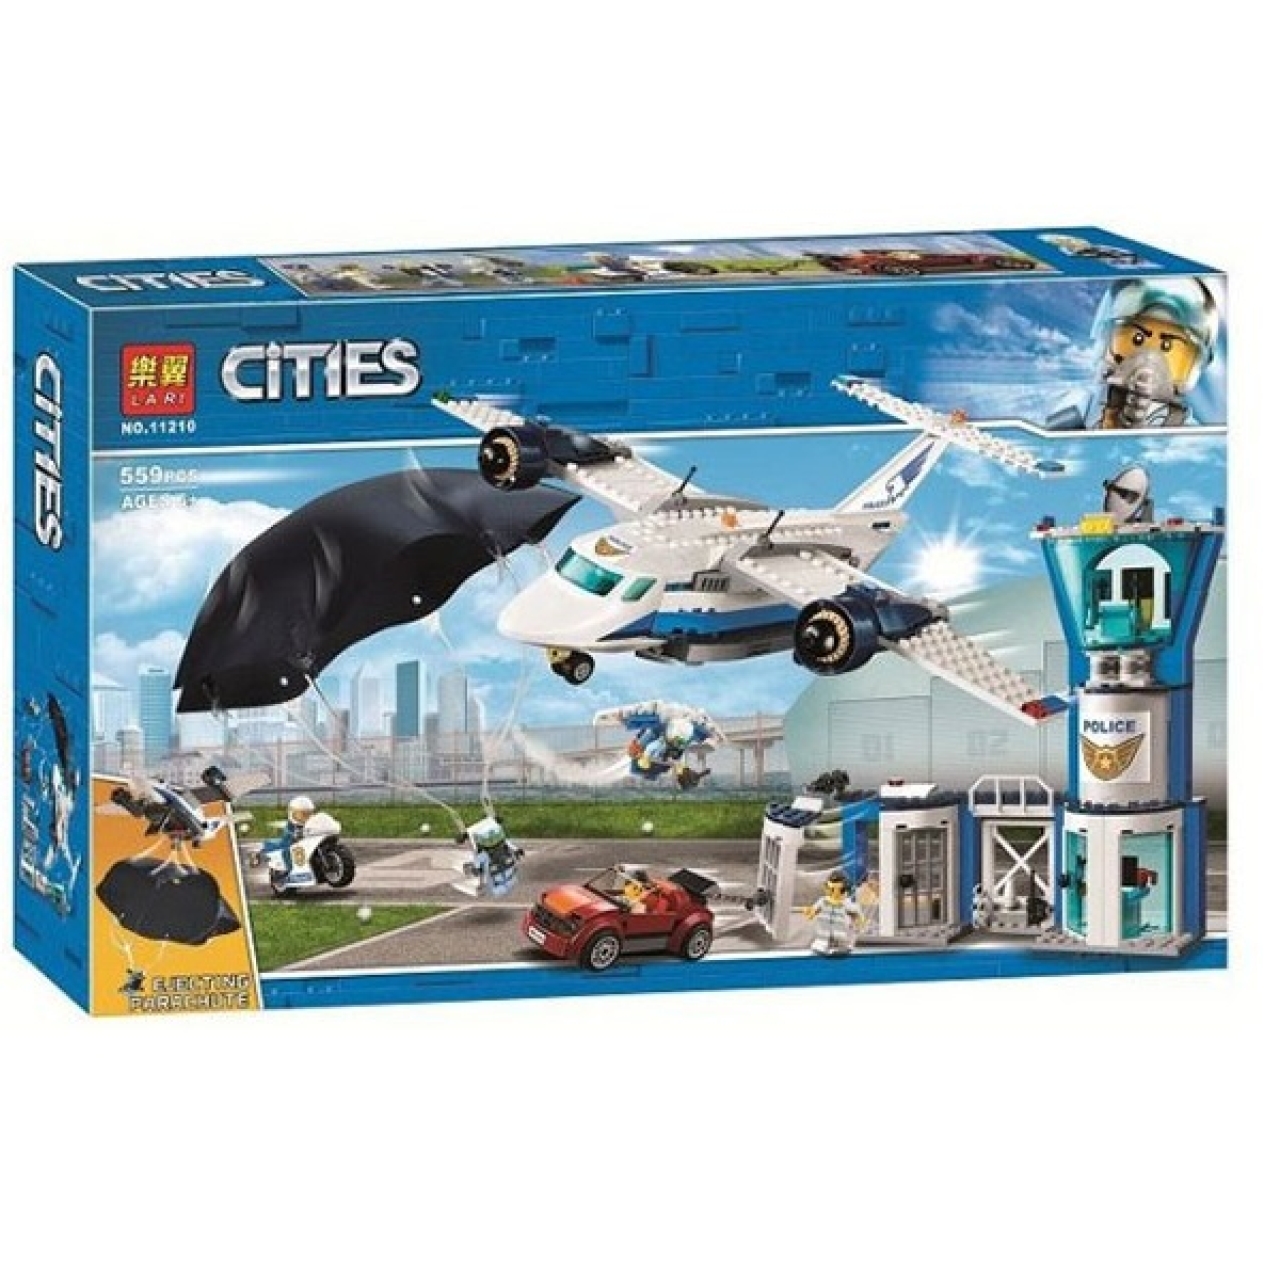 ساختنی لاری مدل Cities کد 11216